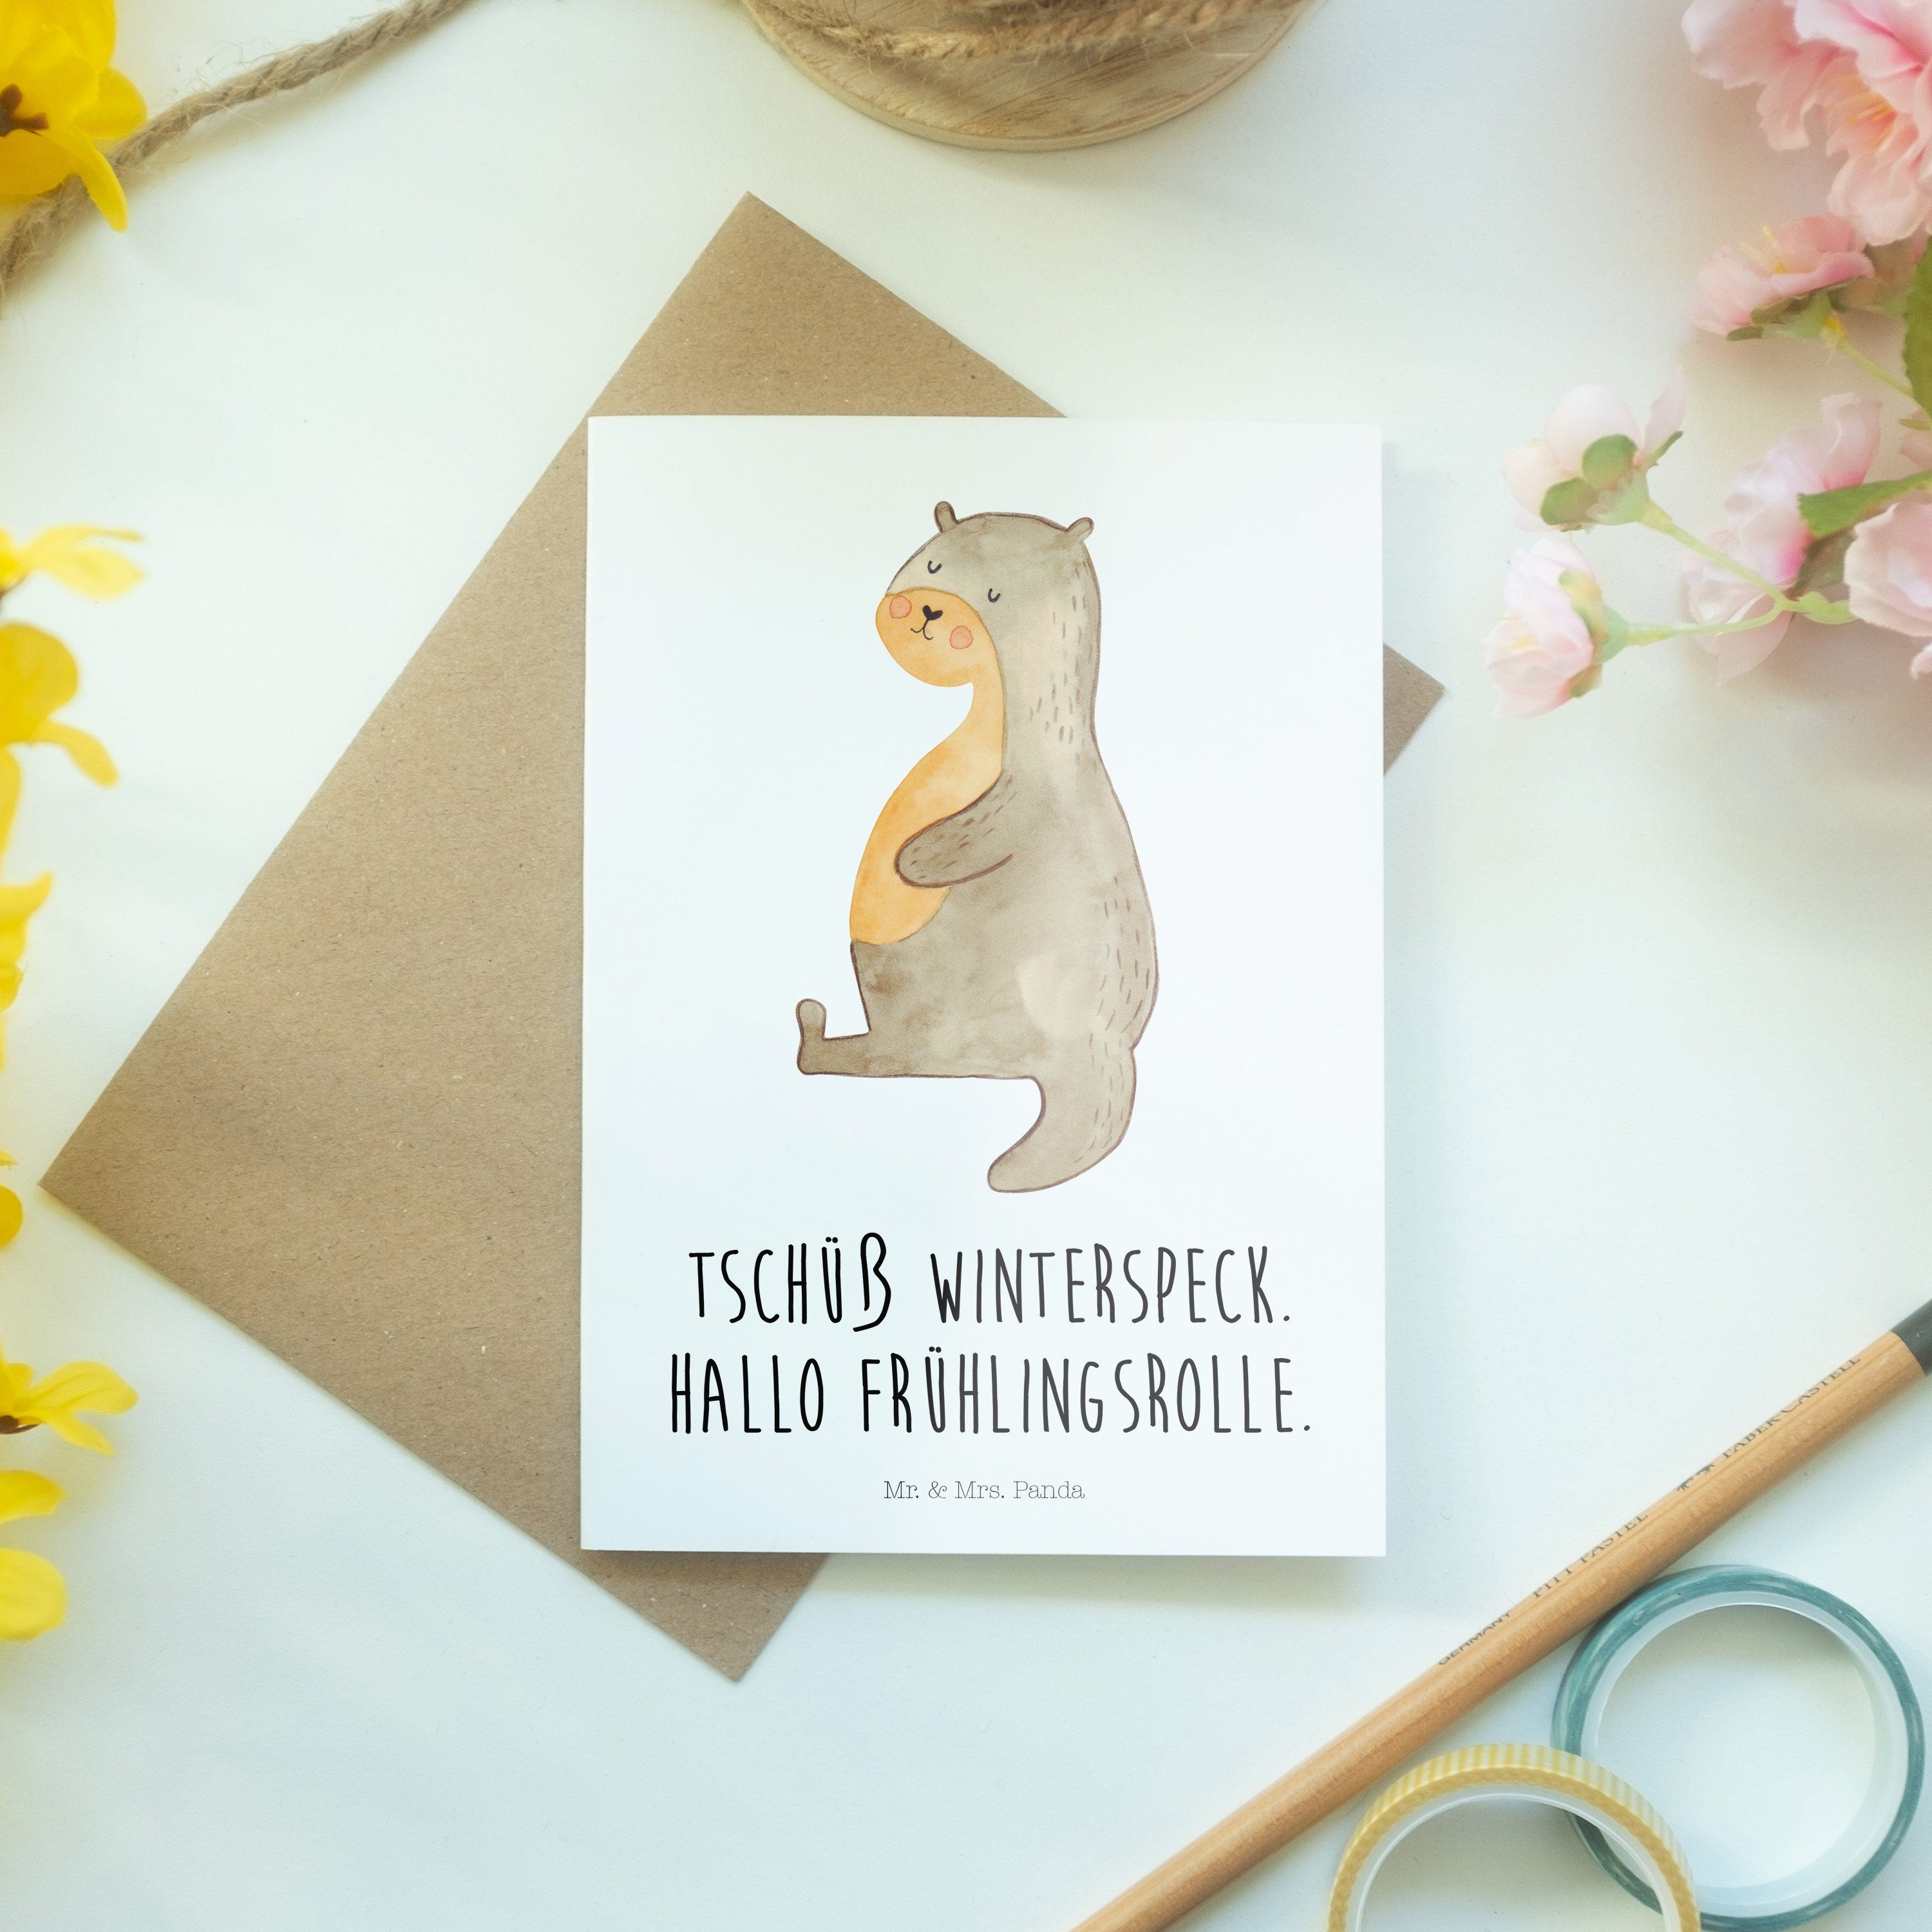 Mr. & Mrs. Panda Hochzeitskarte, Karte, Glückwunschkart - Otter Weiß Grußkarte - Bauch Geschenk